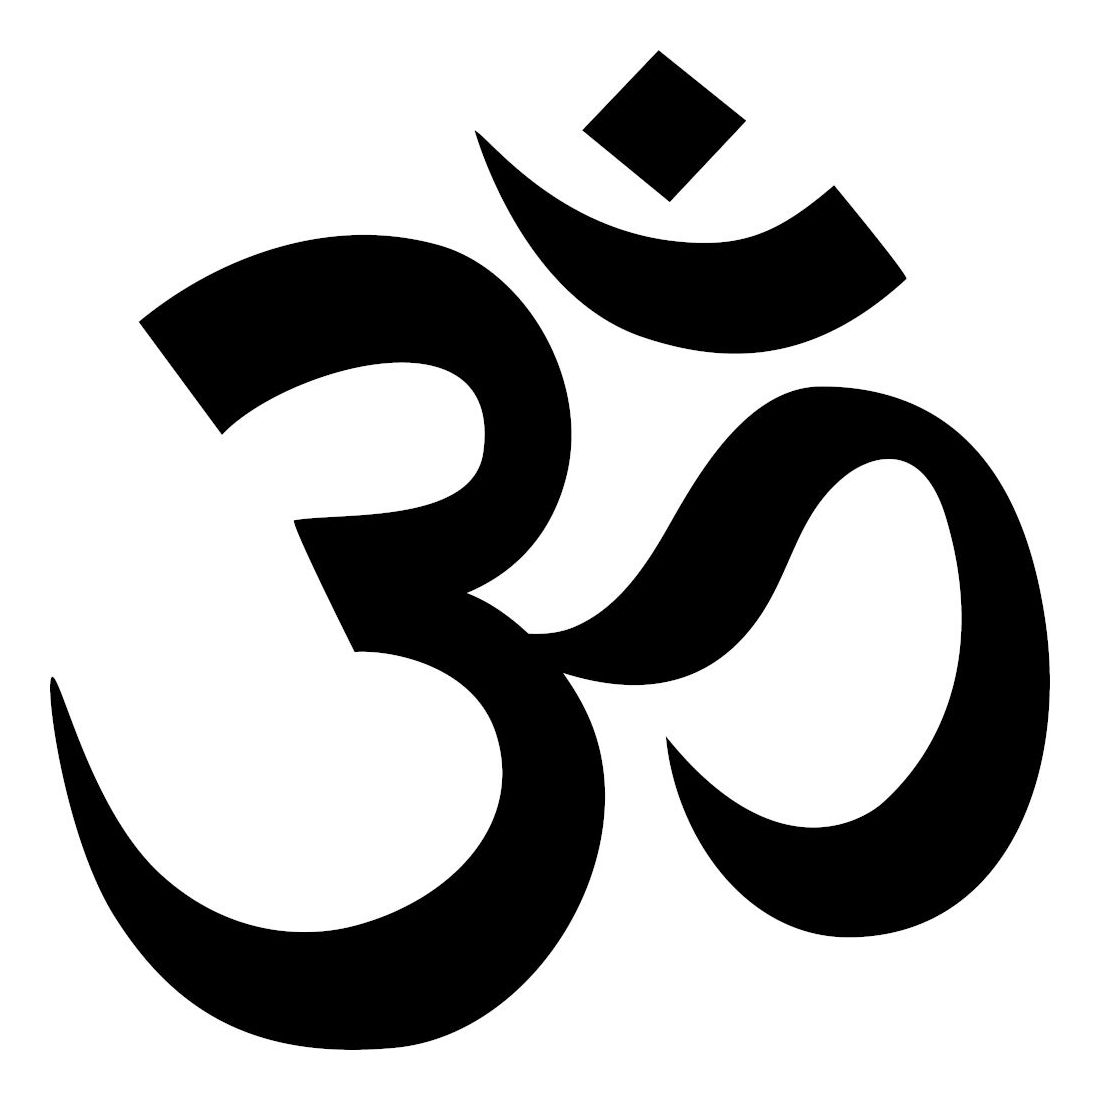 sanskrit om meaning